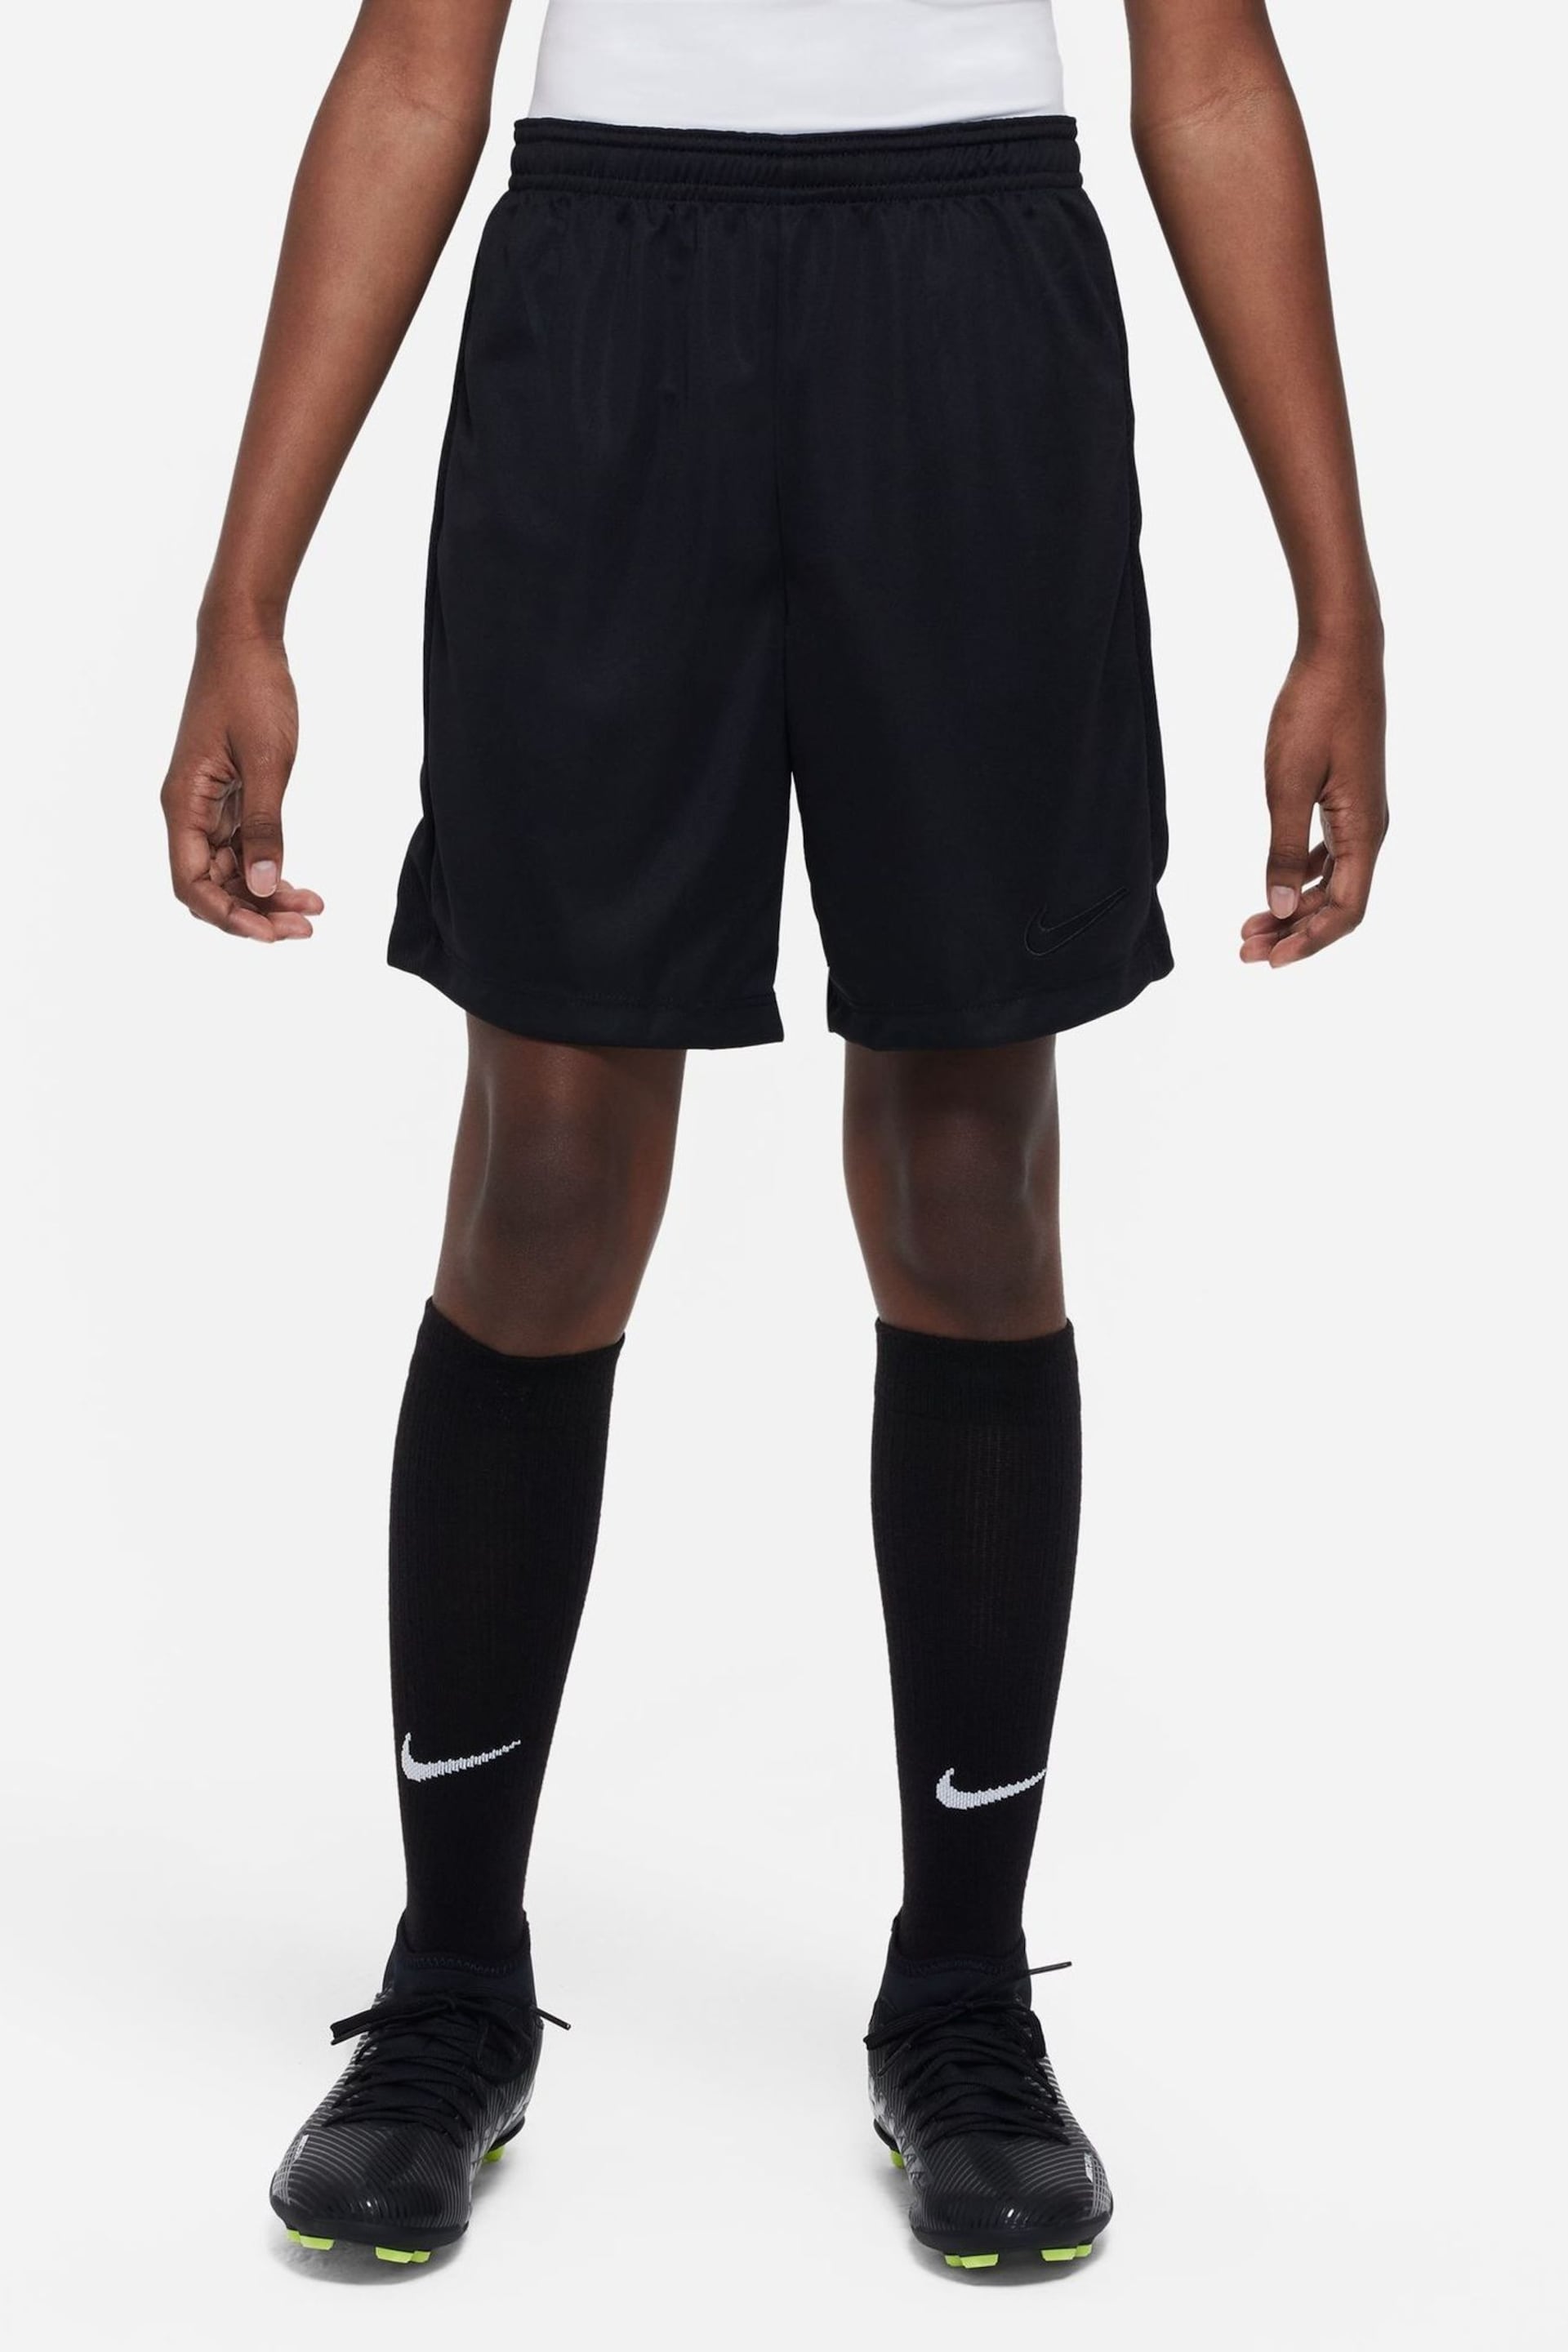 Nike Black Dri-FIT Academy Training Shorts - Image 1 of 9